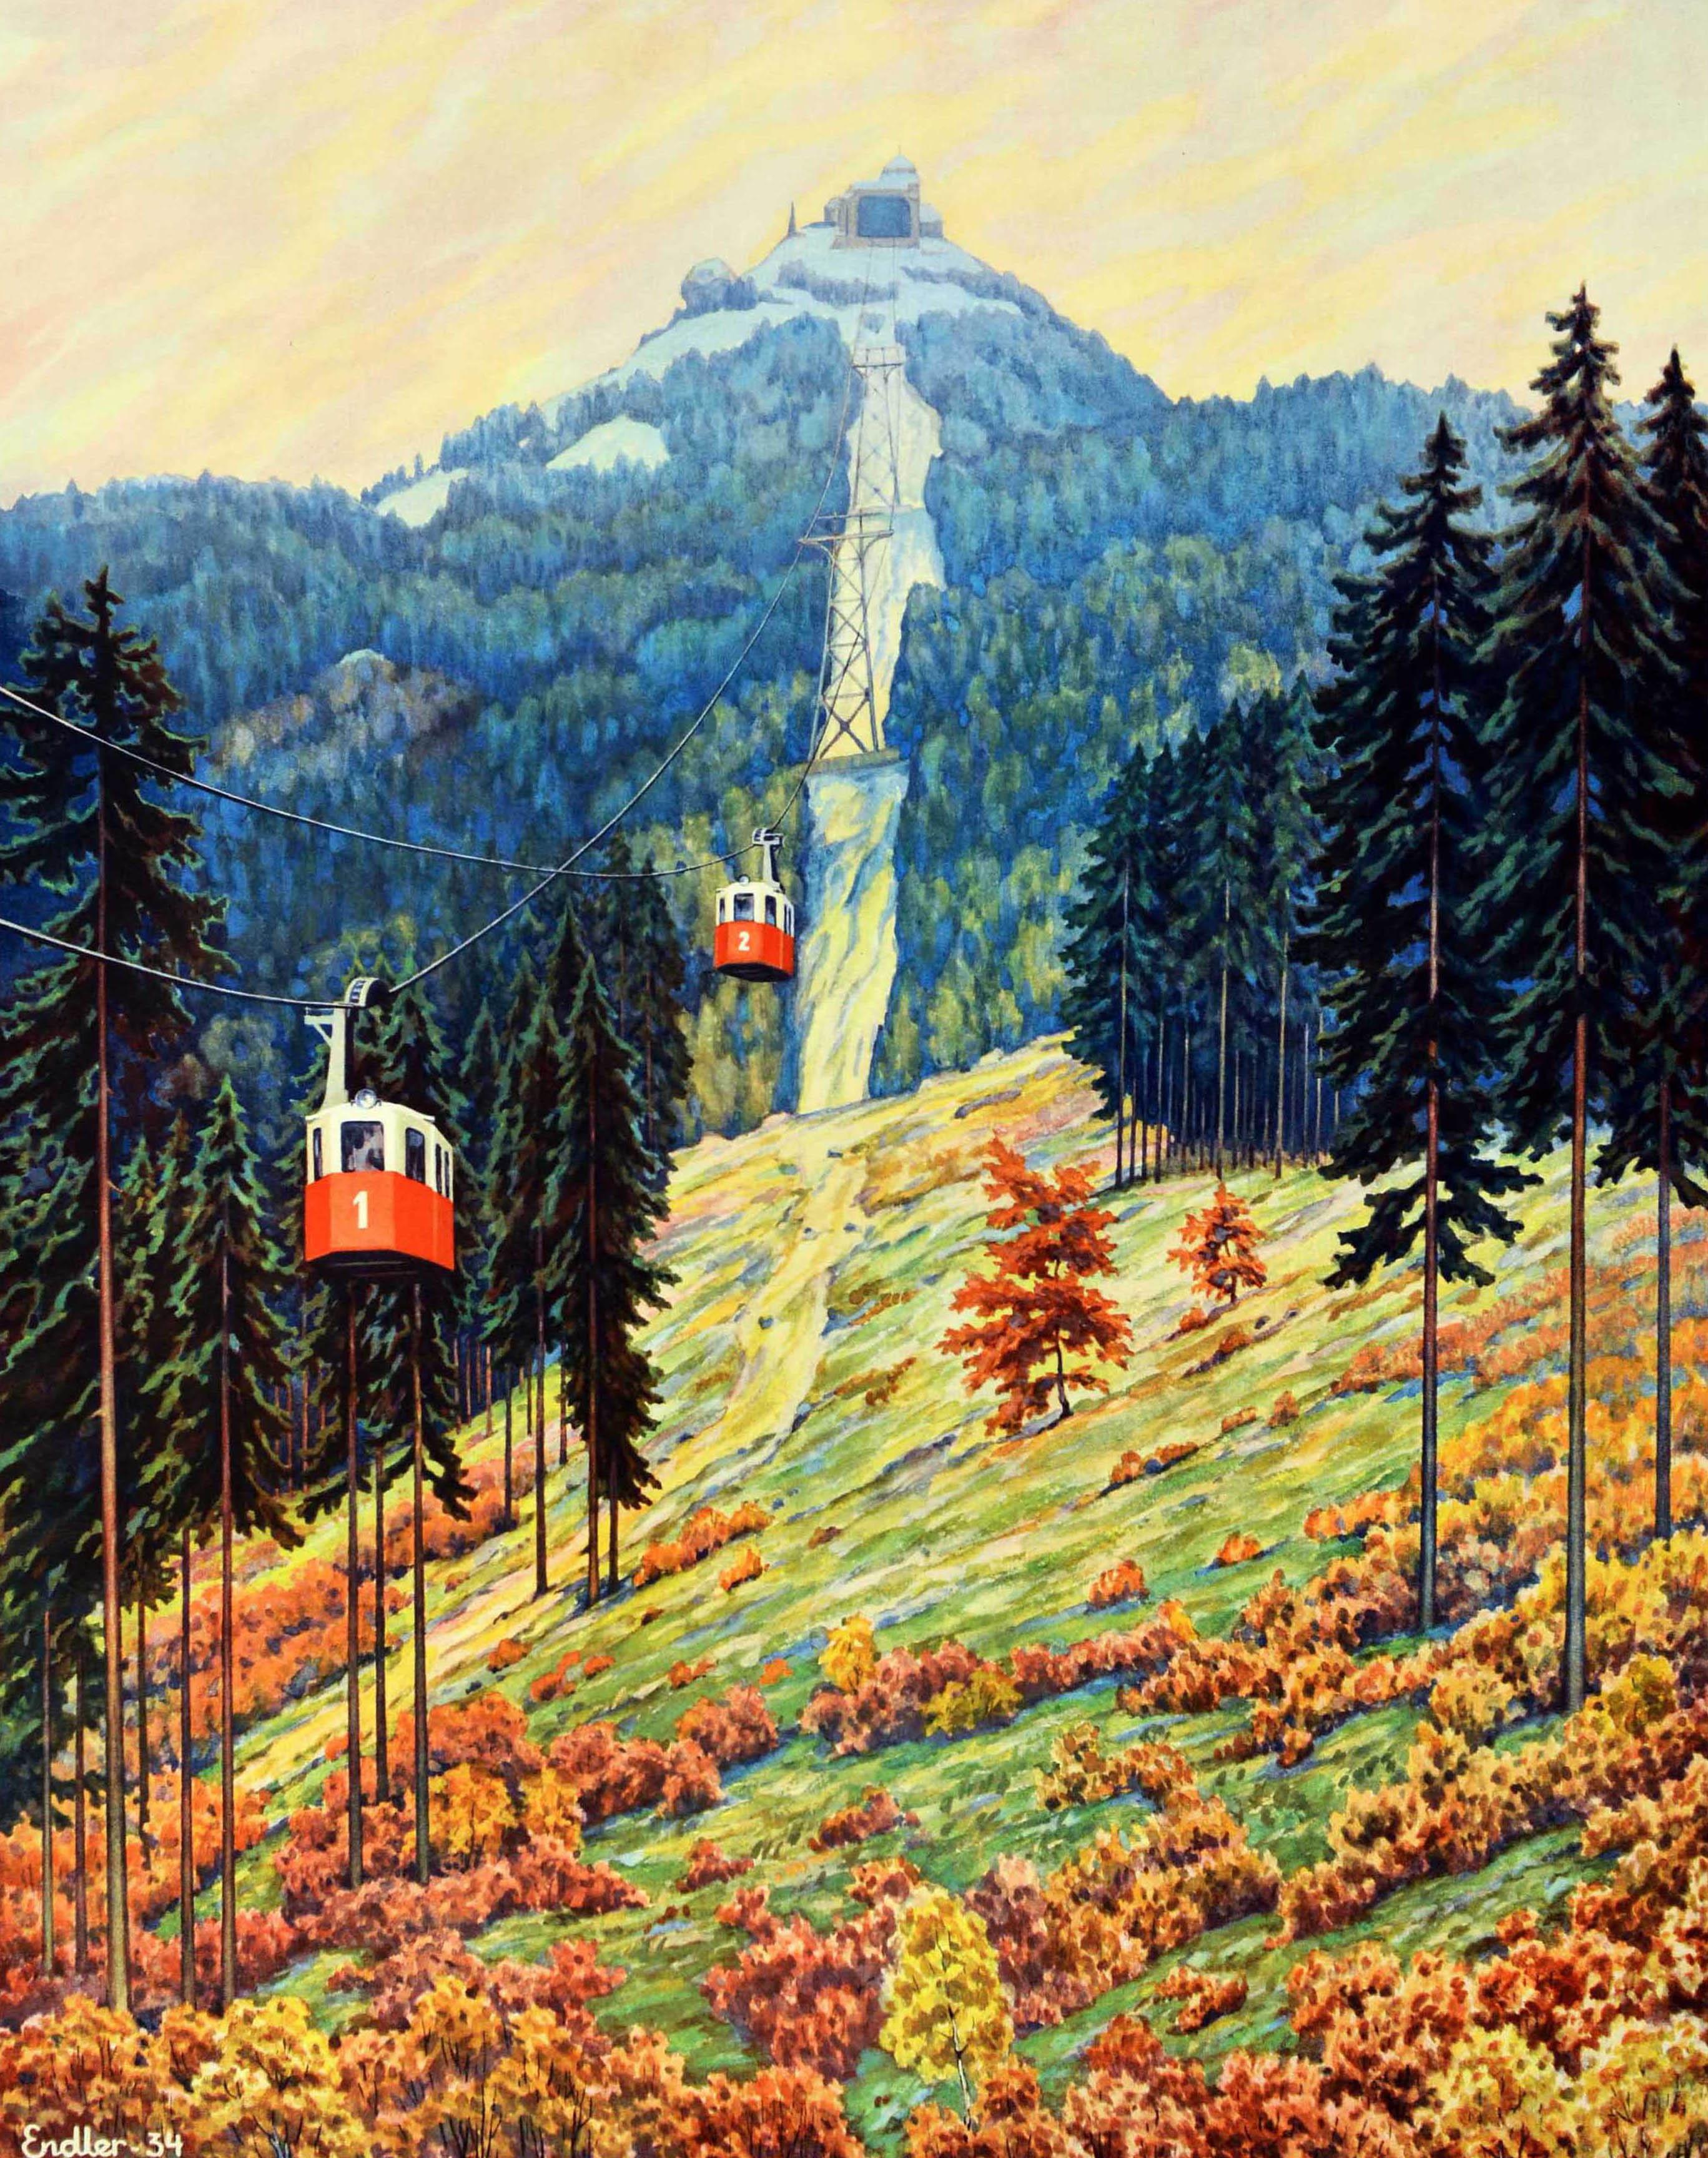 Affiche de voyage originale d'époque faisant la publicité de la CSD Ceskoslovenske Statni Drahy Chemins de fer tchécoslovaques. Elle présente une superbe illustration représentant un téléphérique sur une montagne avec des arbres de part et d'autre